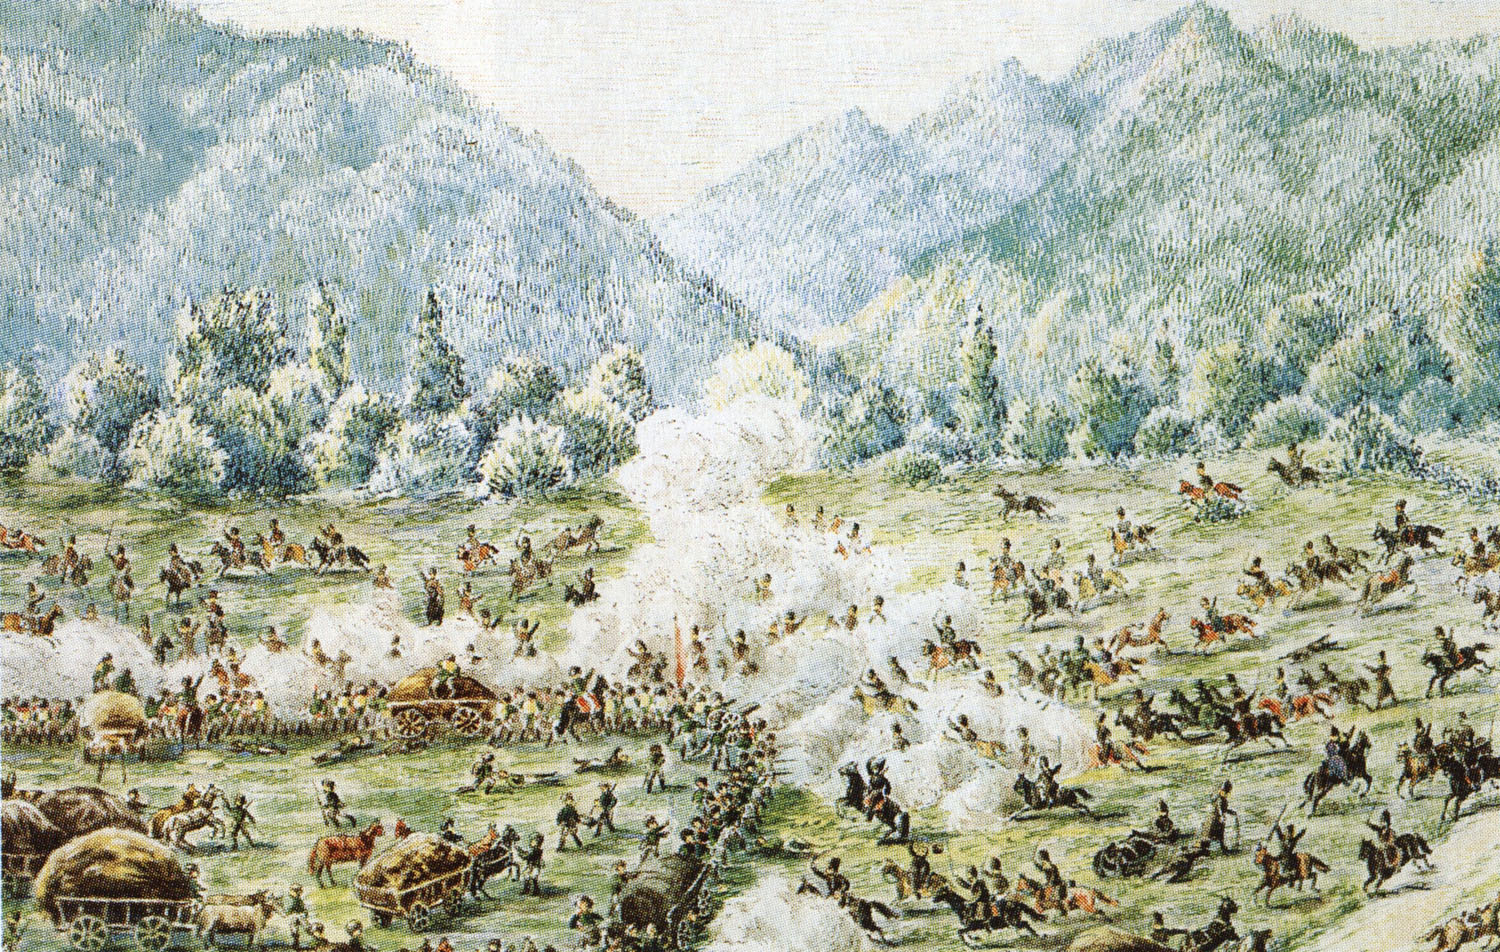 Е. Геевский. Нападение горцев на транспорт, следующий из крепости Усть-Лабинской 18 июля 1825 года. 1840-е.